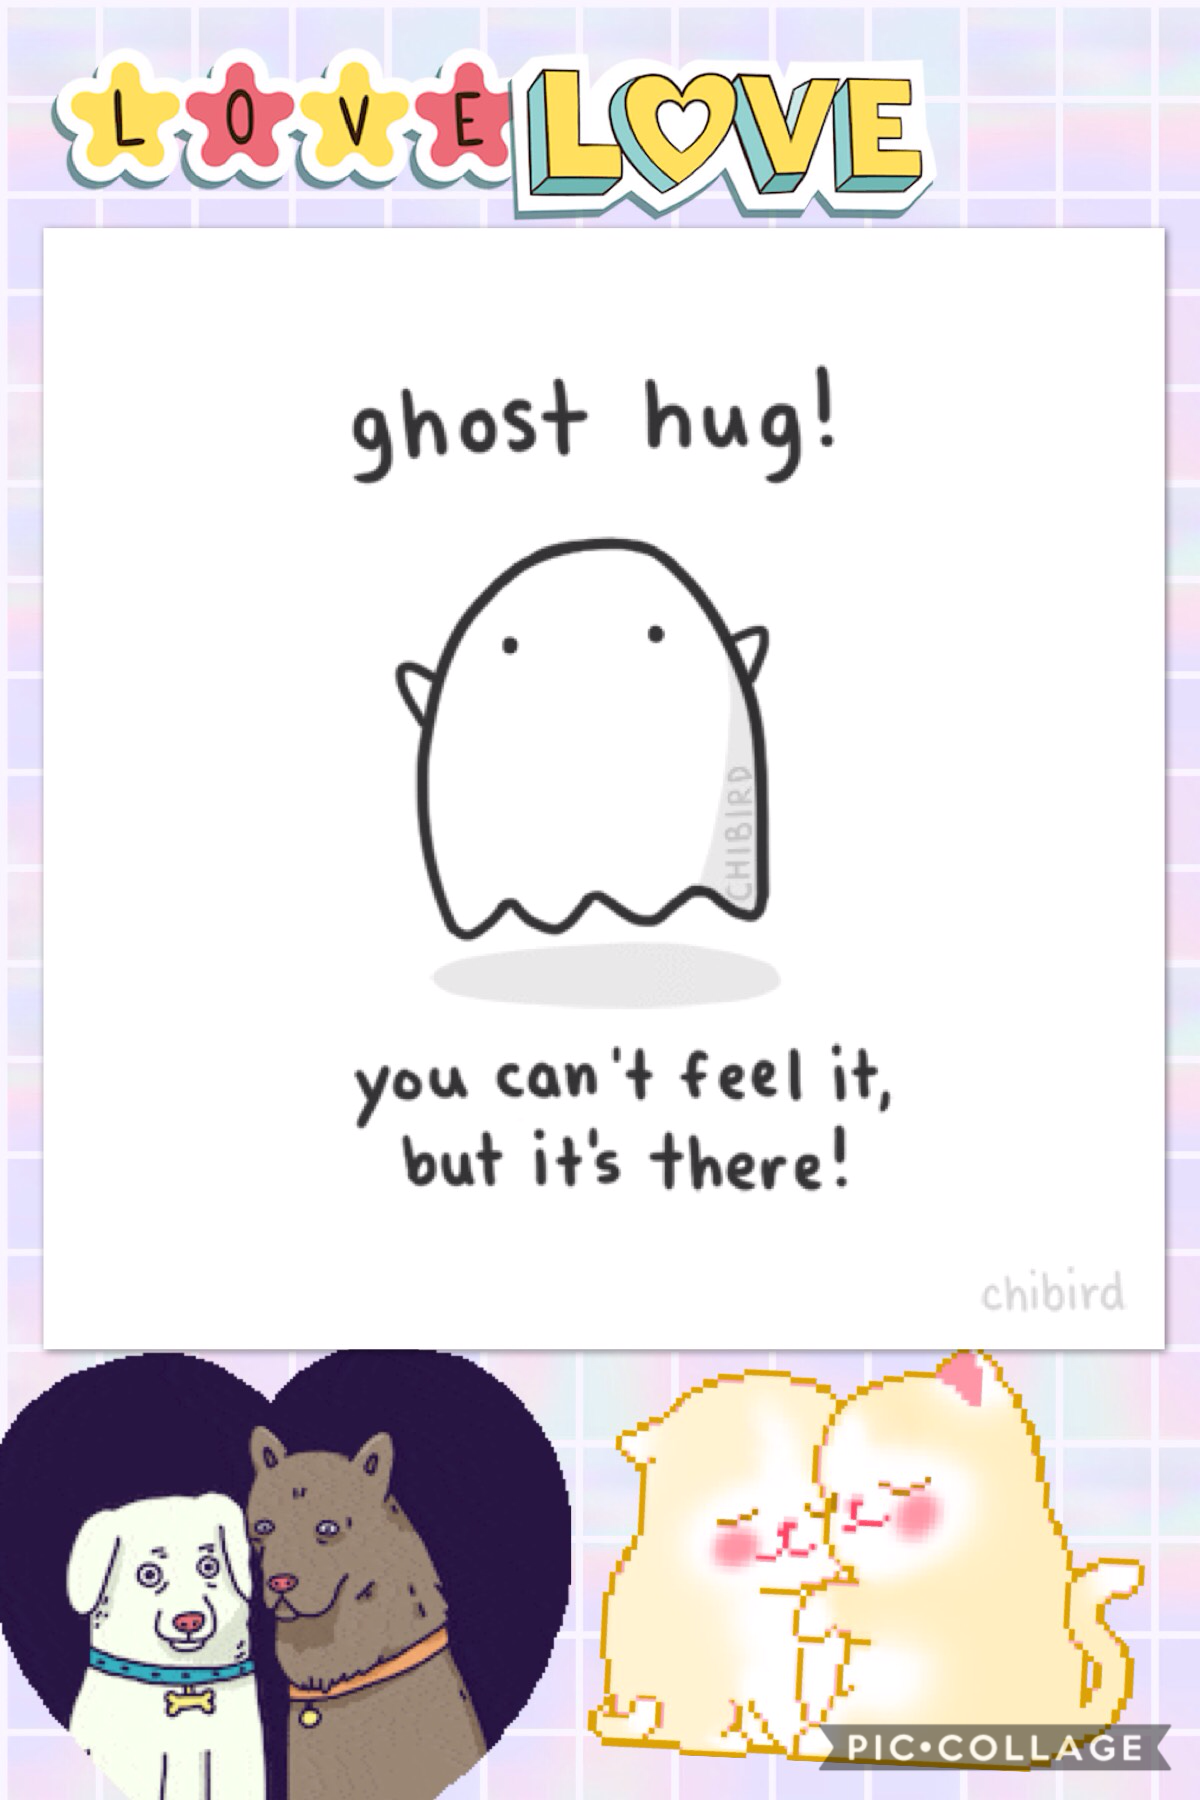 Give me a hug!